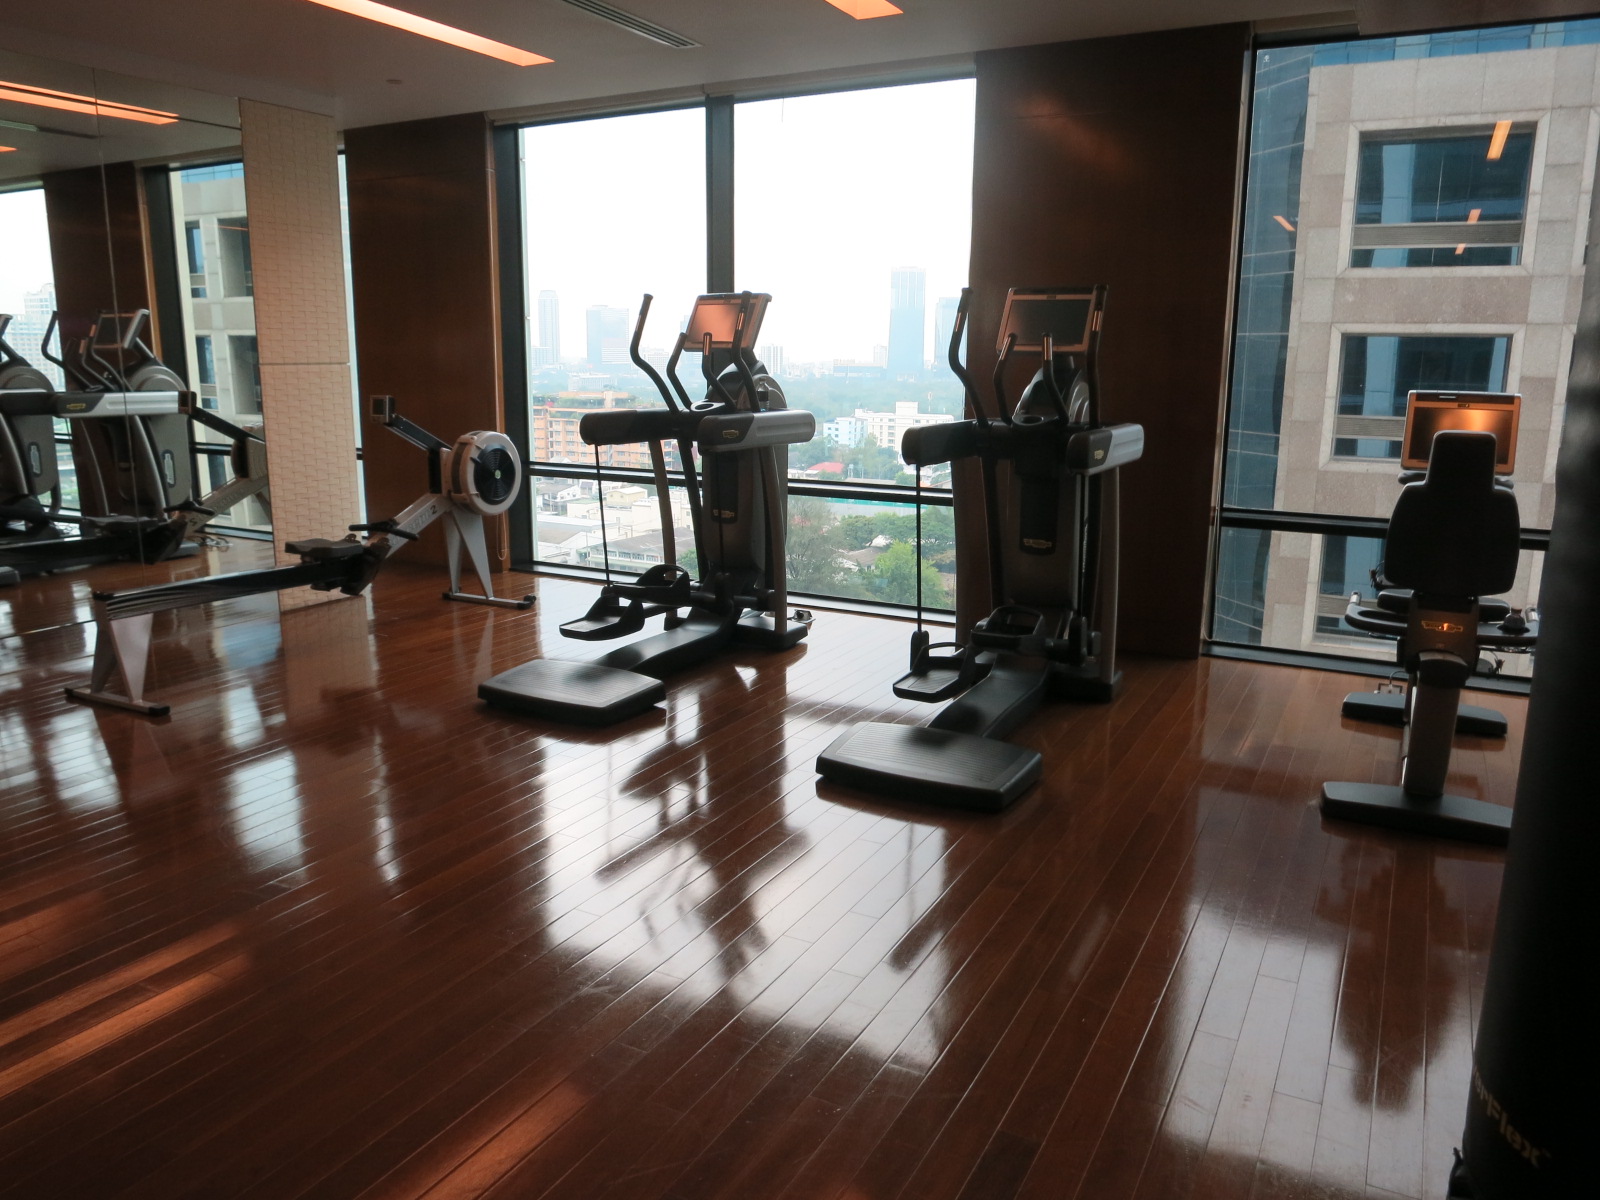 St. Regis Bangkok hotel fitness center